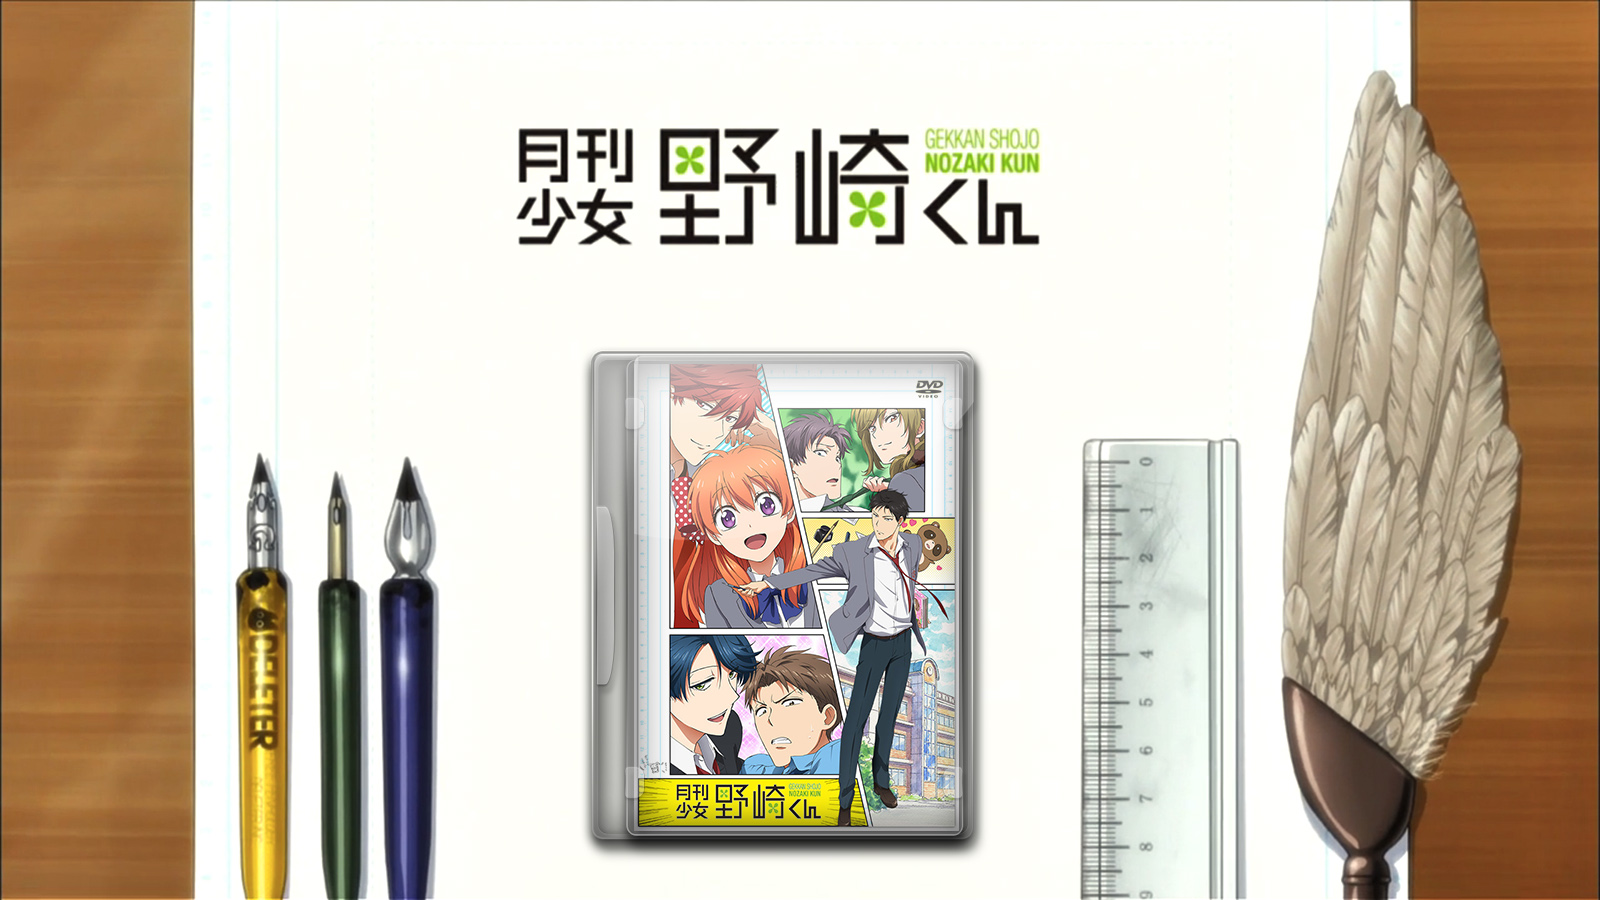 Gekkan Shoujo Nozaki-kun DVD icon